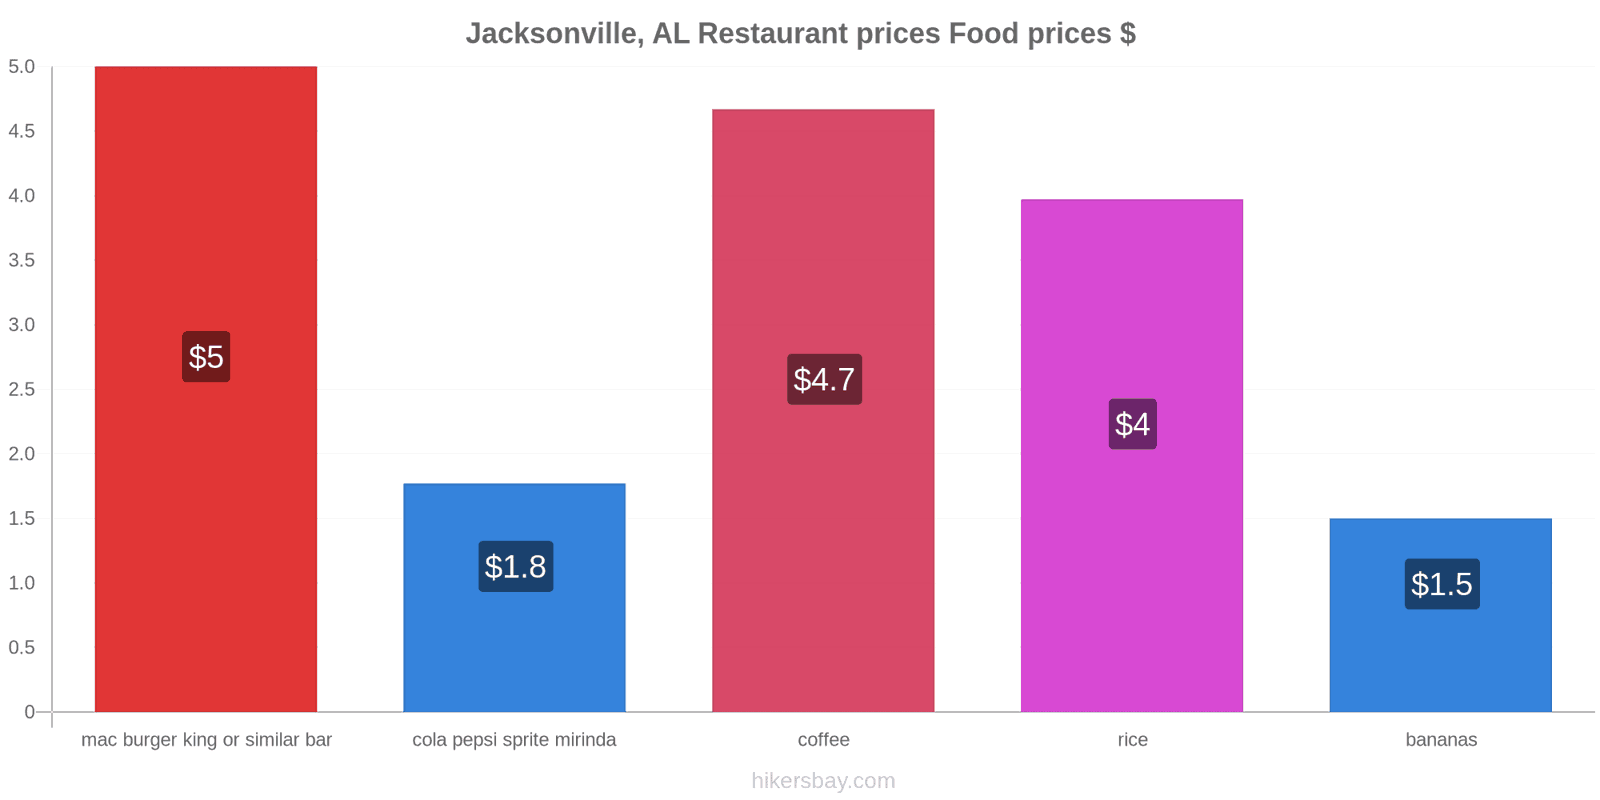 Jacksonville, AL price changes hikersbay.com